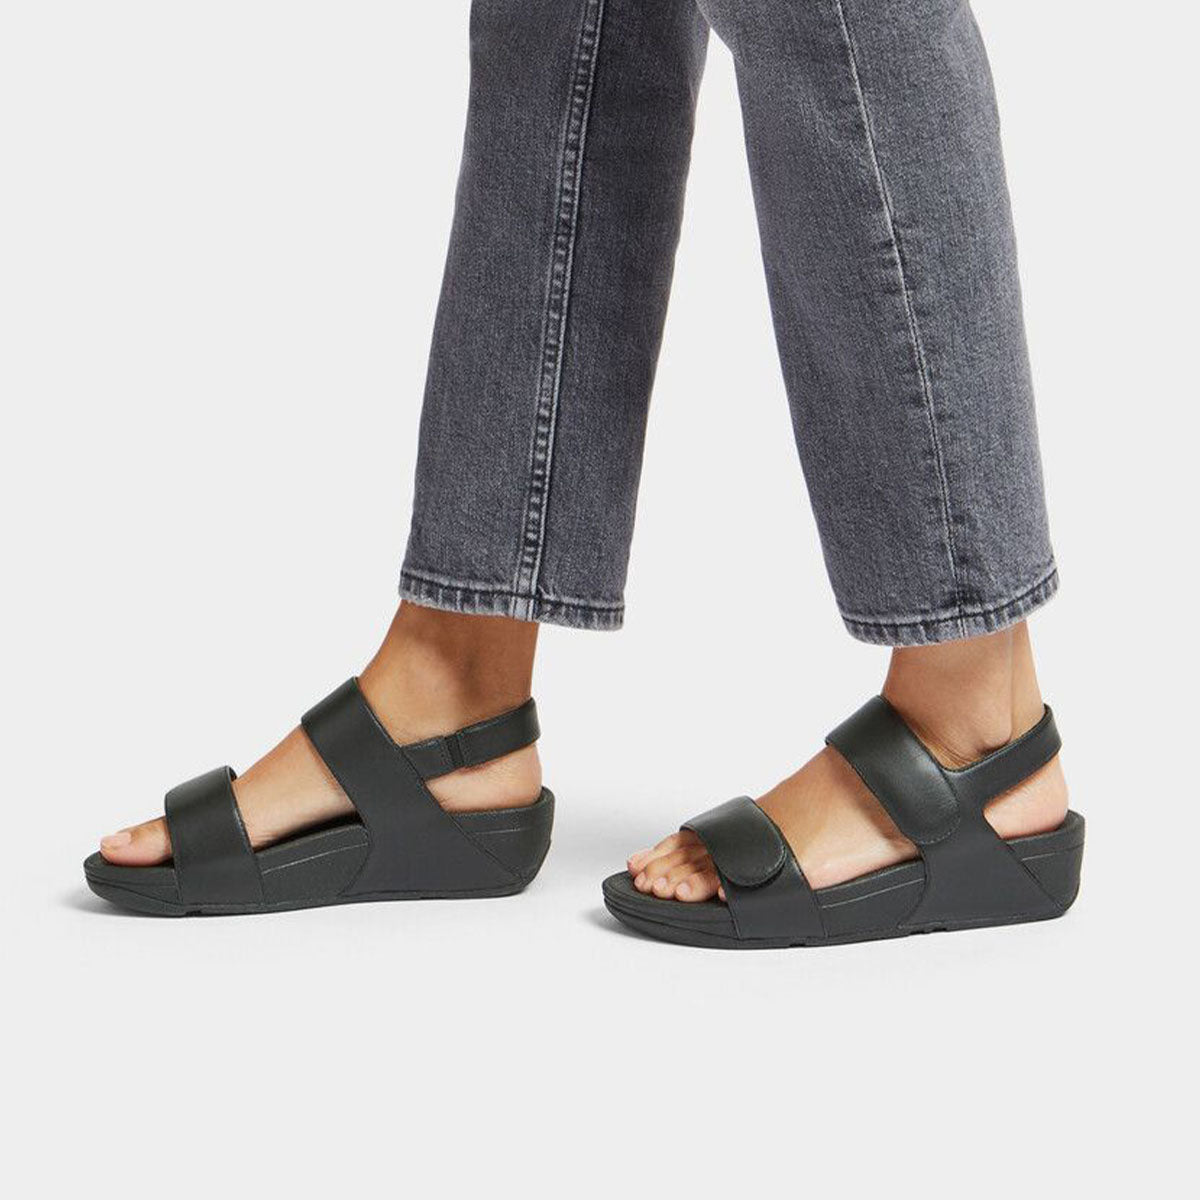 Fit Flop Lulu Adjustable Back-Strap Sandals Black פיט-פלופ סנדלי נשים שחור